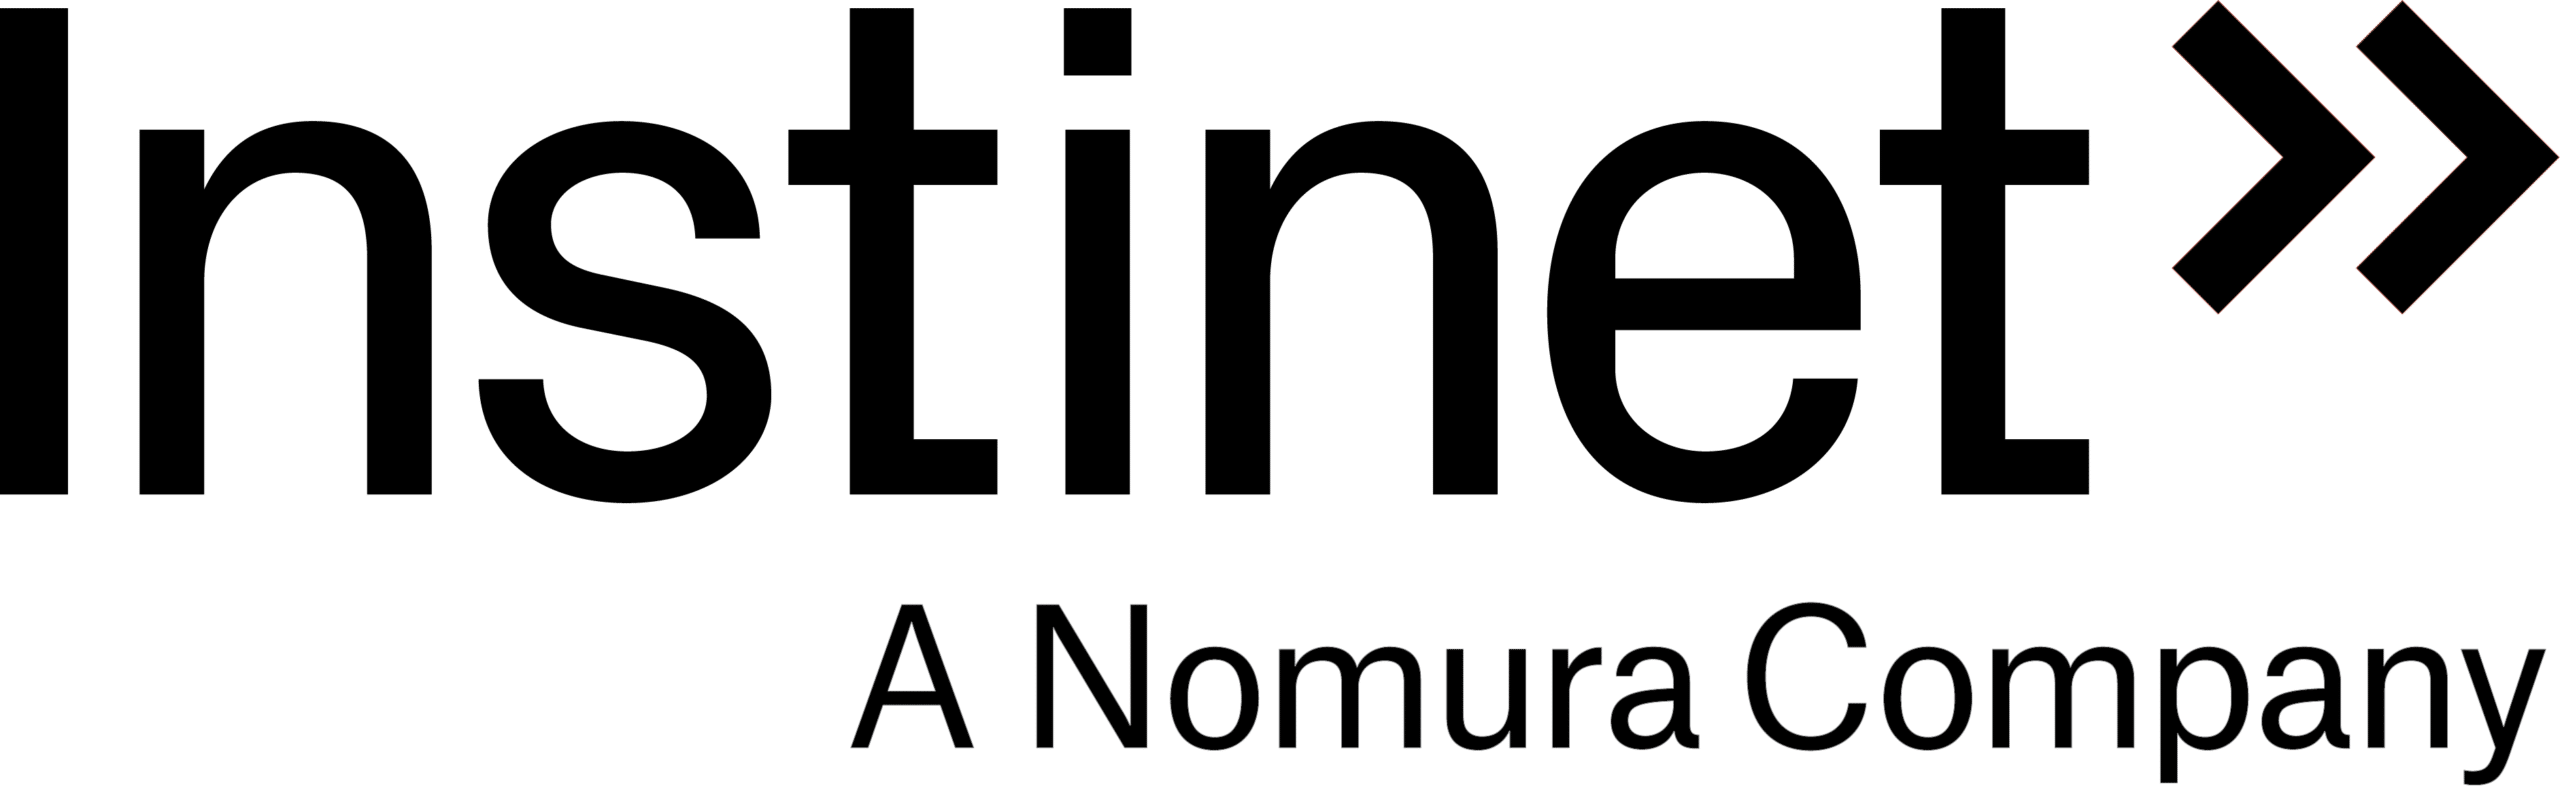 Instinet logo